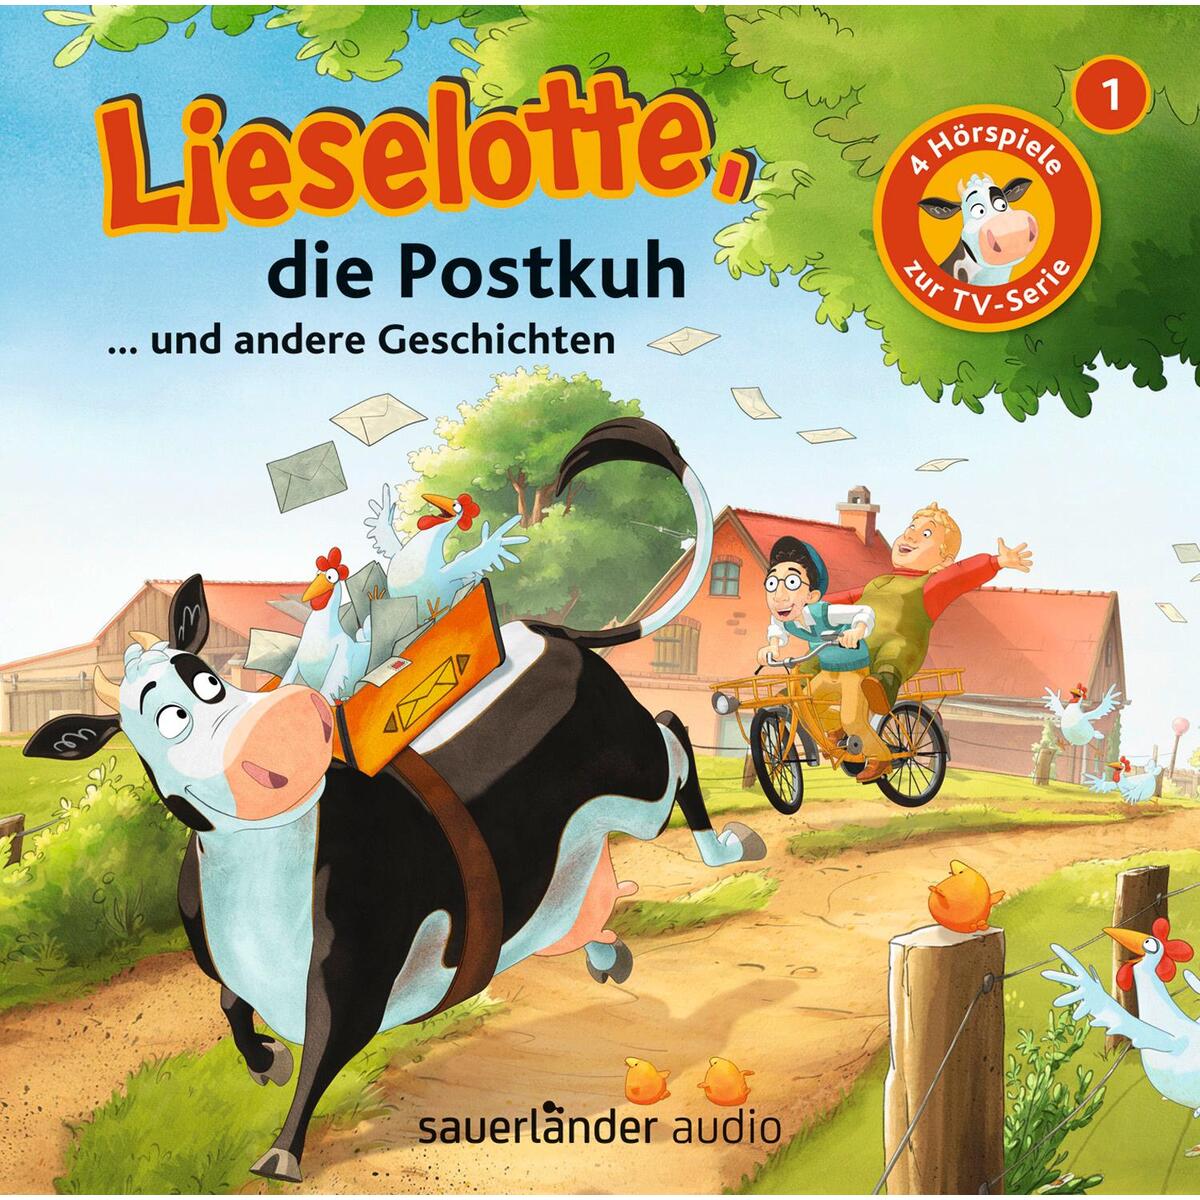 Lieselotte, die Postkuh von Argon Sauerländer Audio